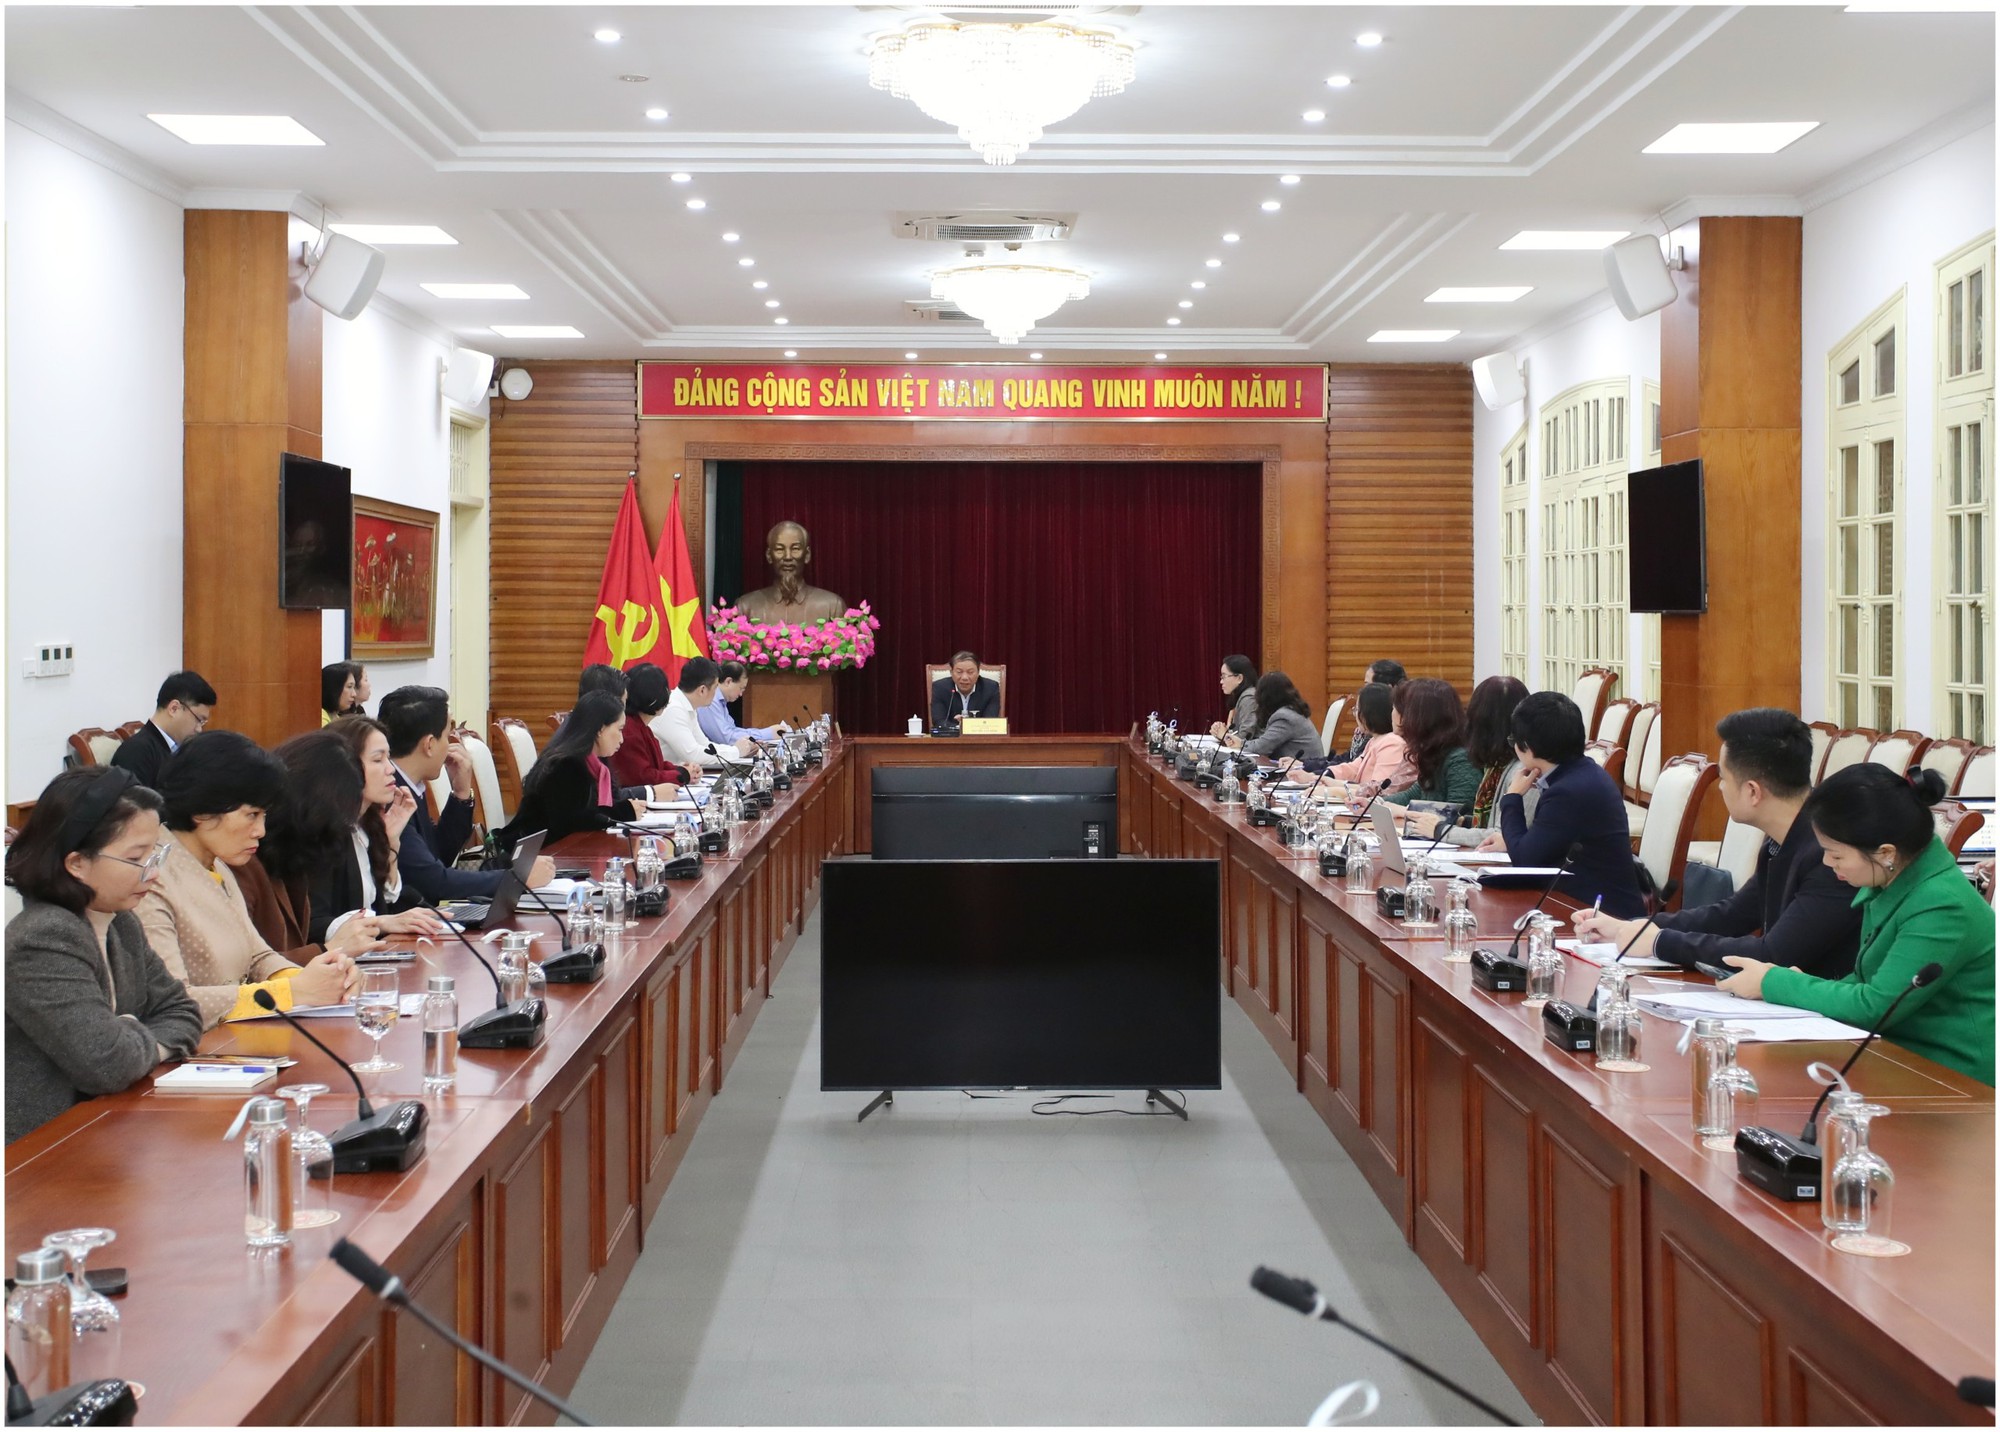 Chủ động, phát huy sức mạnh tổng hợp triển khai tốt các hoạt động kỷ niệm 80 năm Đề cương về Văn hóa Việt Nam - Ảnh 4.